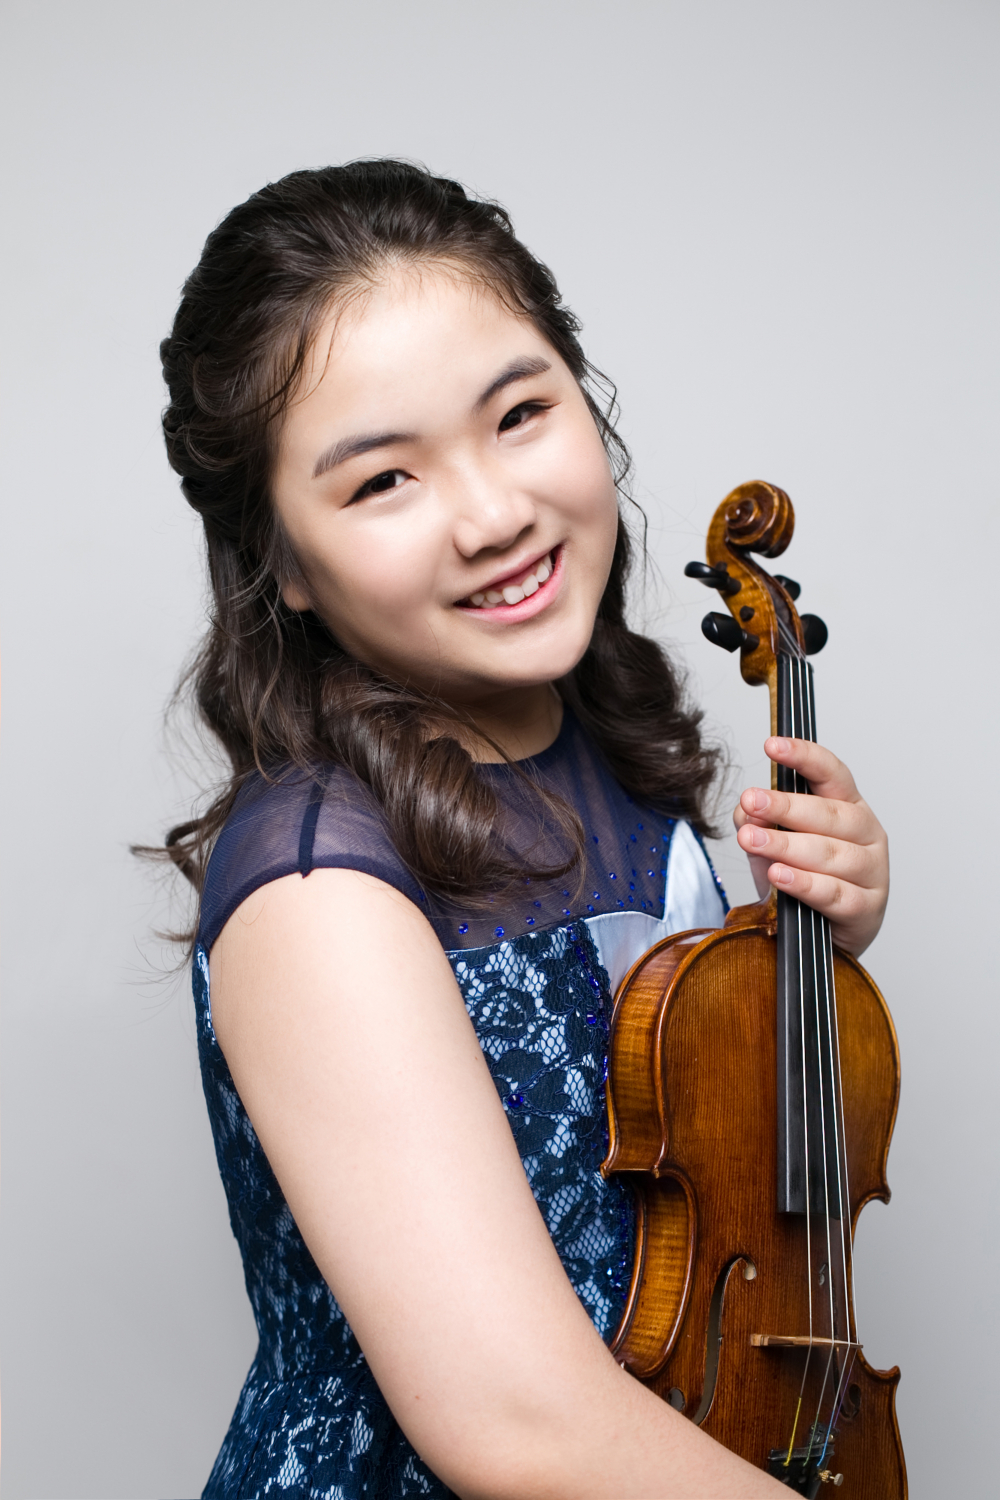 JeonMin là một nghệ sĩ violin giàu kỹ thuật cùng năng khiếu âm nhạc được ra tại Seoul năm 2006 và bắt đầu chơi đàn từ năm 4 tuổi.